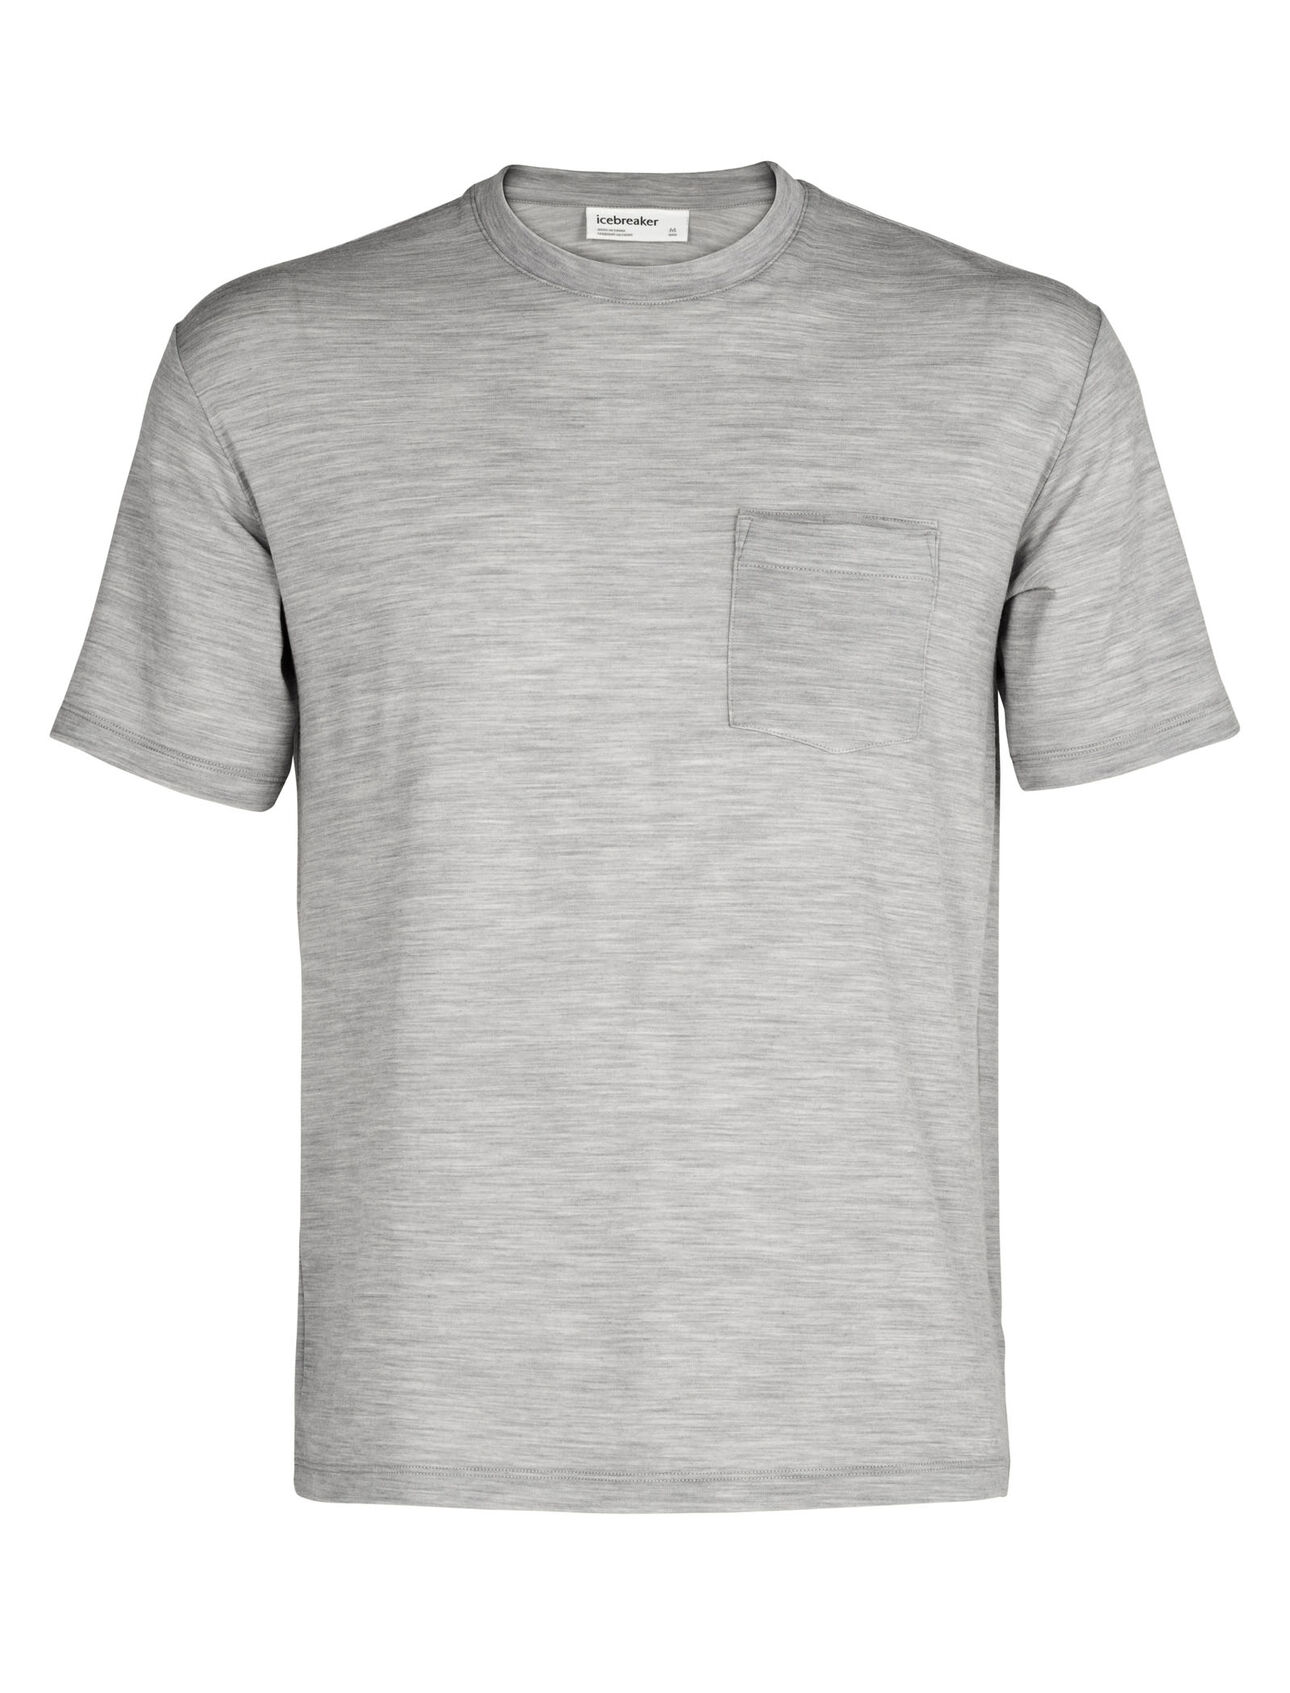 150 T-shirt met korte mouwen, ronde hals en borstzakje van merinowol